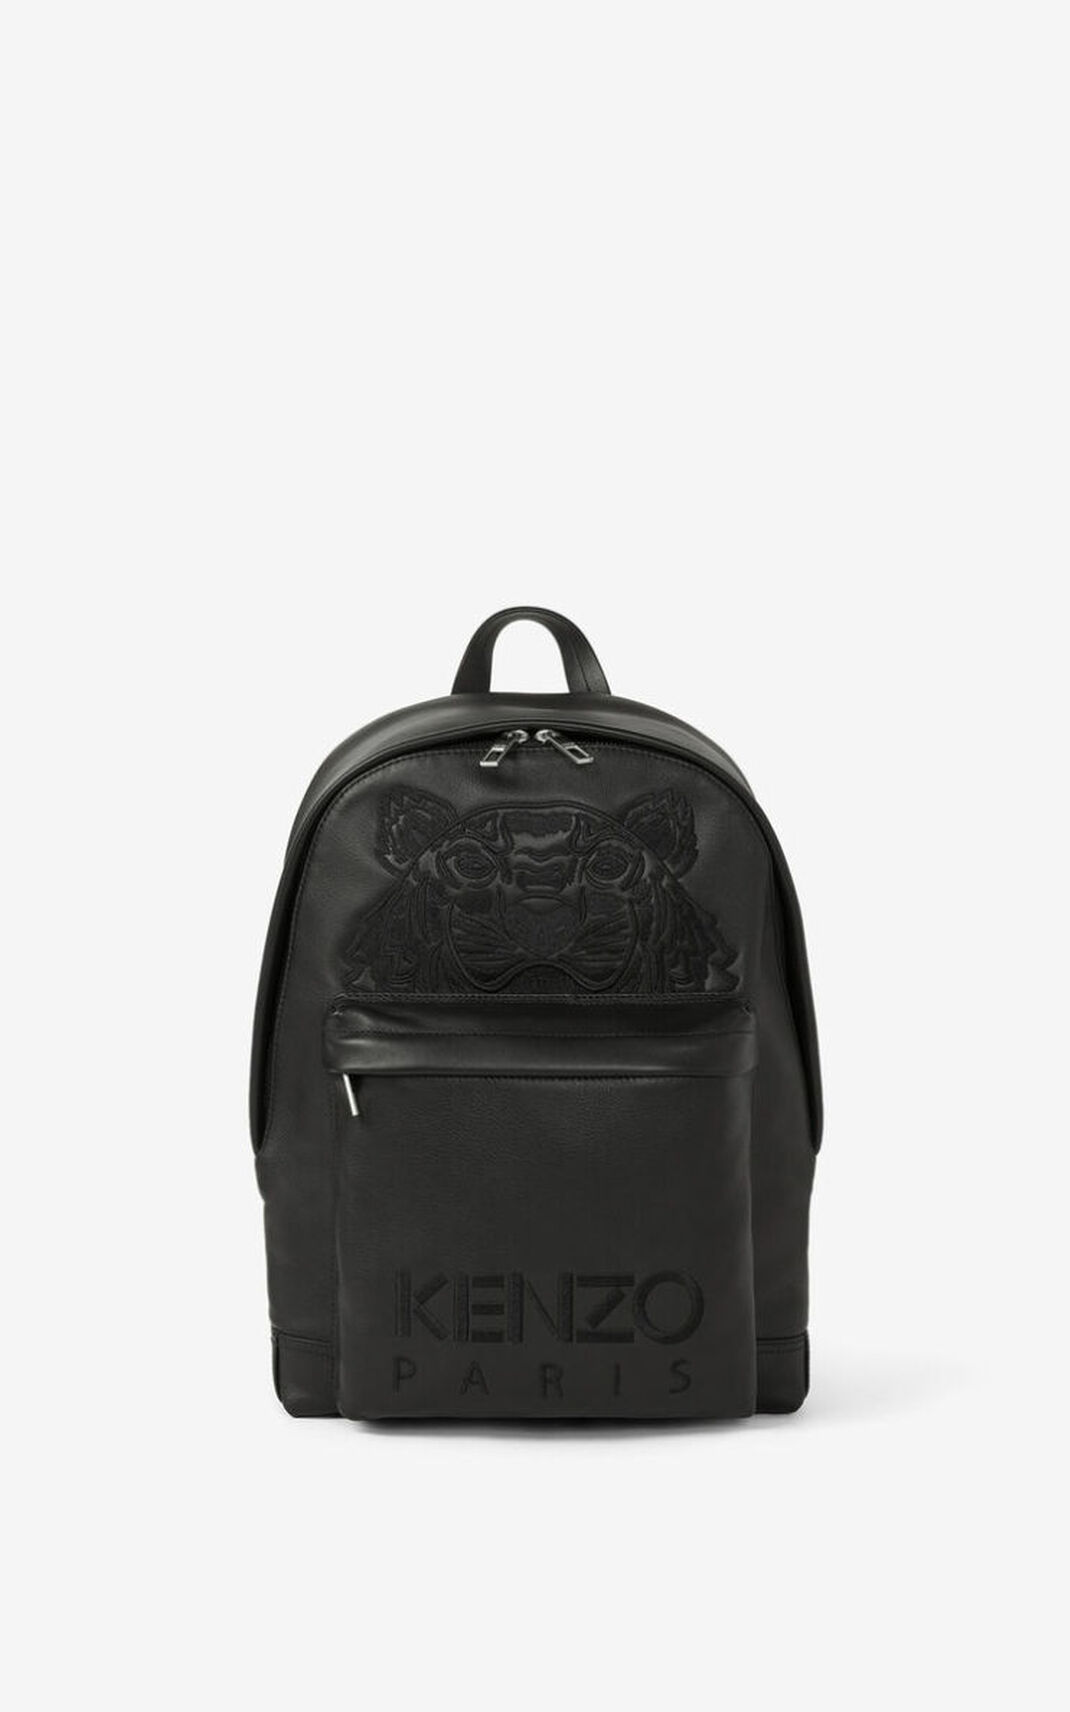 Kenzo Kampus Tiger leather Backpack Black For Mens 7601JCKBW